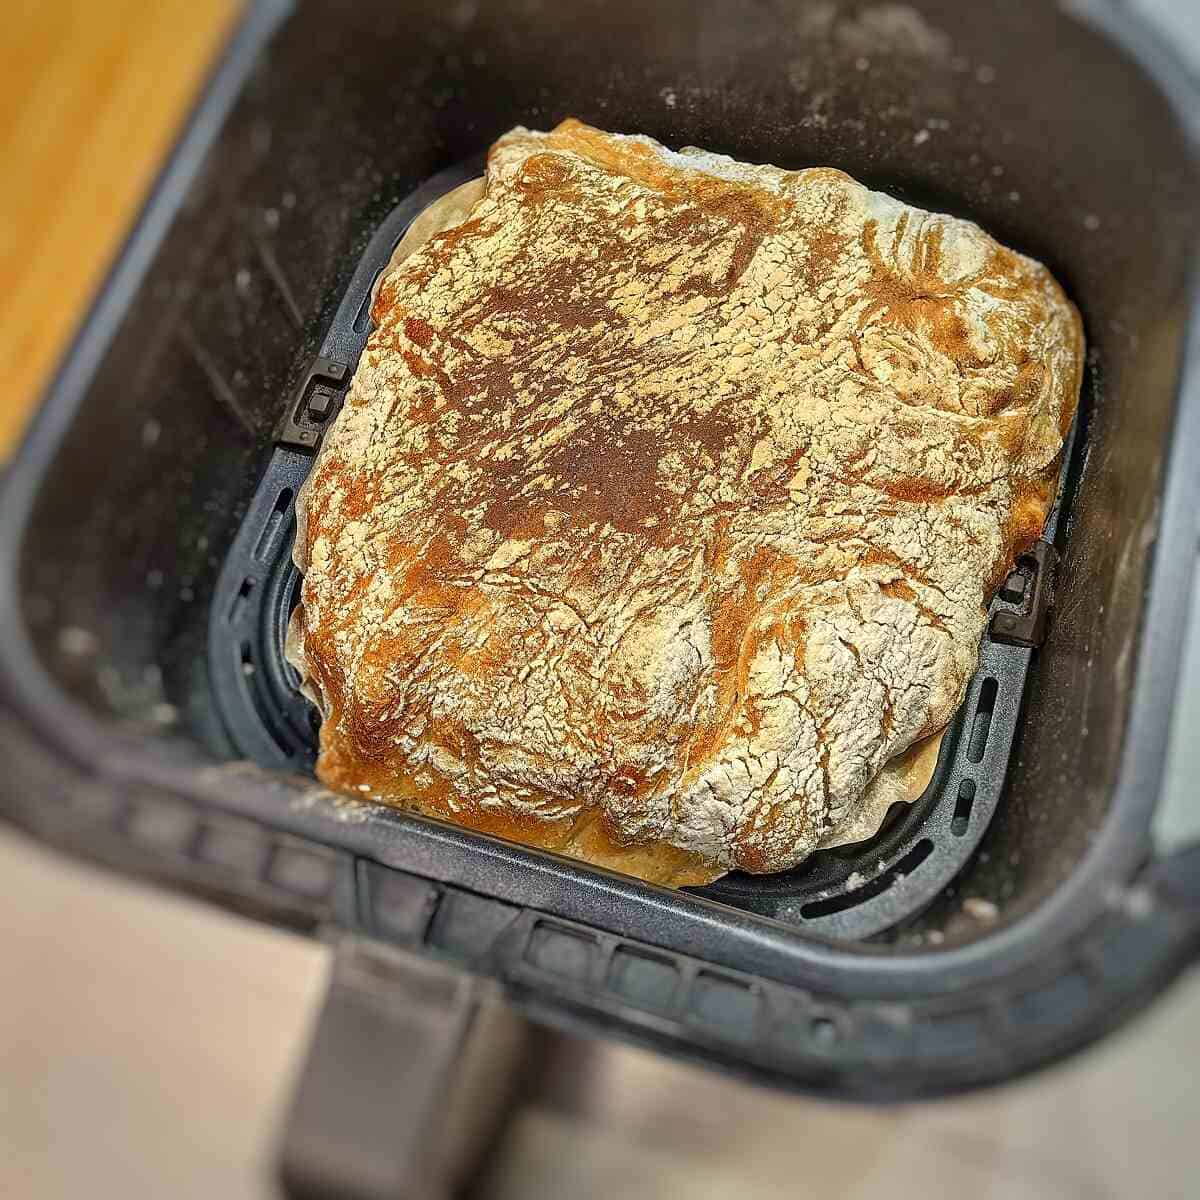 baked ciabatta bread insider air fryer basket